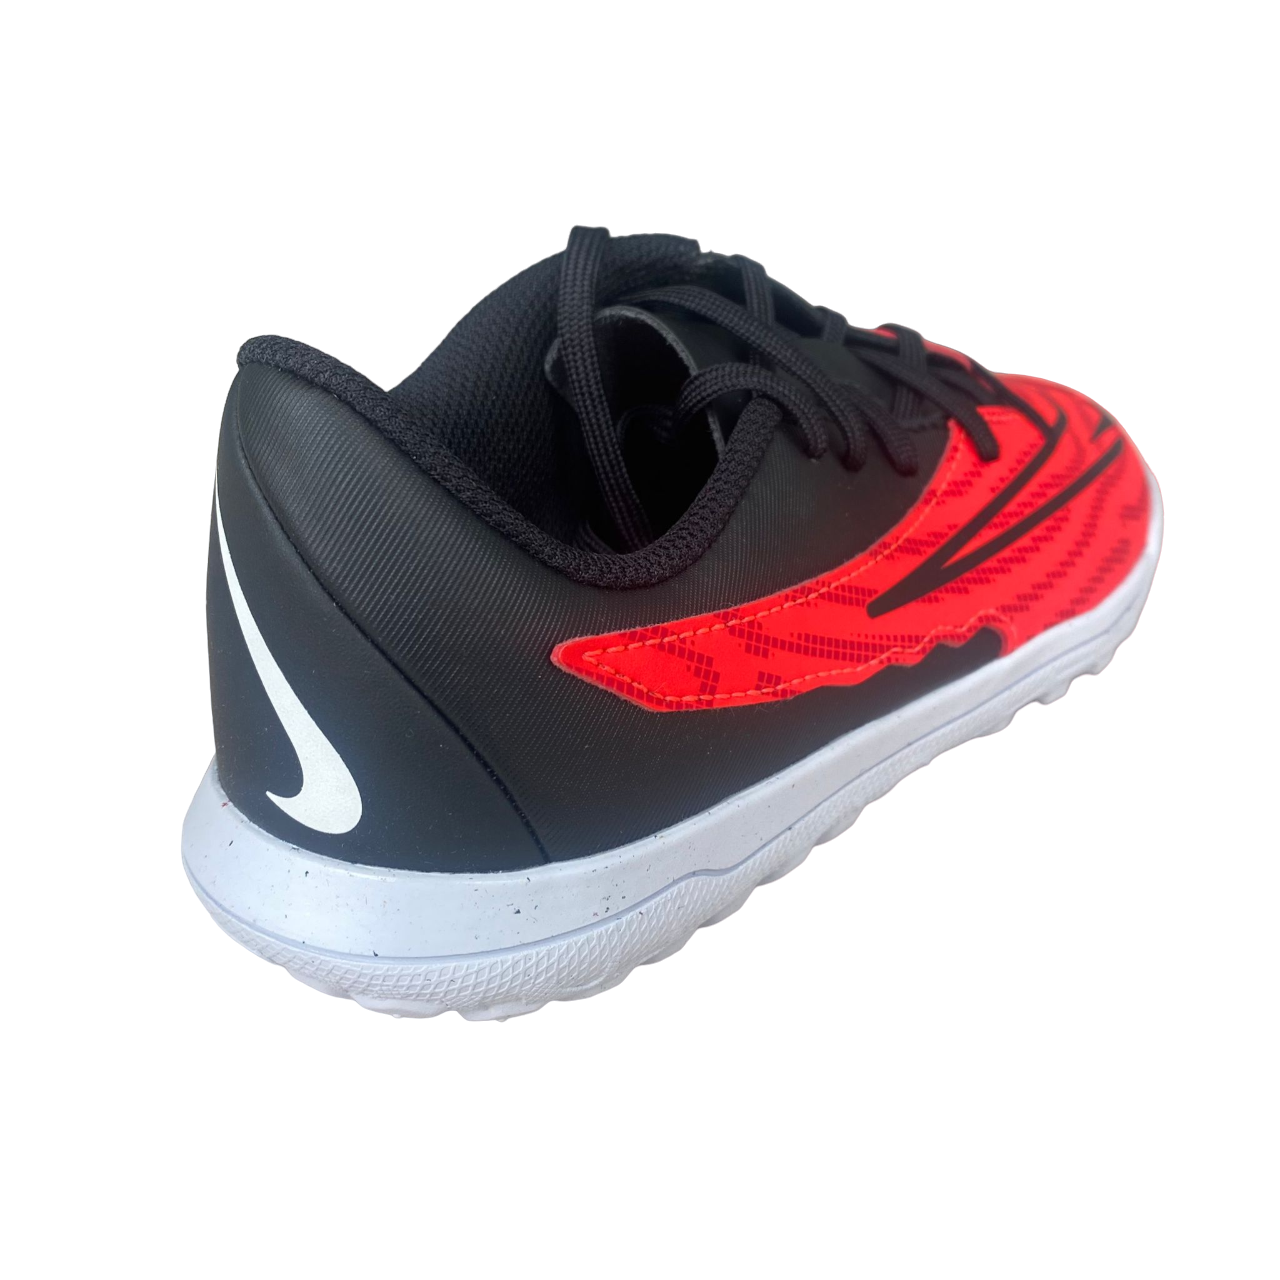 Nike scarpa da calcetto da ragazzo Phantom GX Club TF DD9567-600 crimisi-nero-bianco